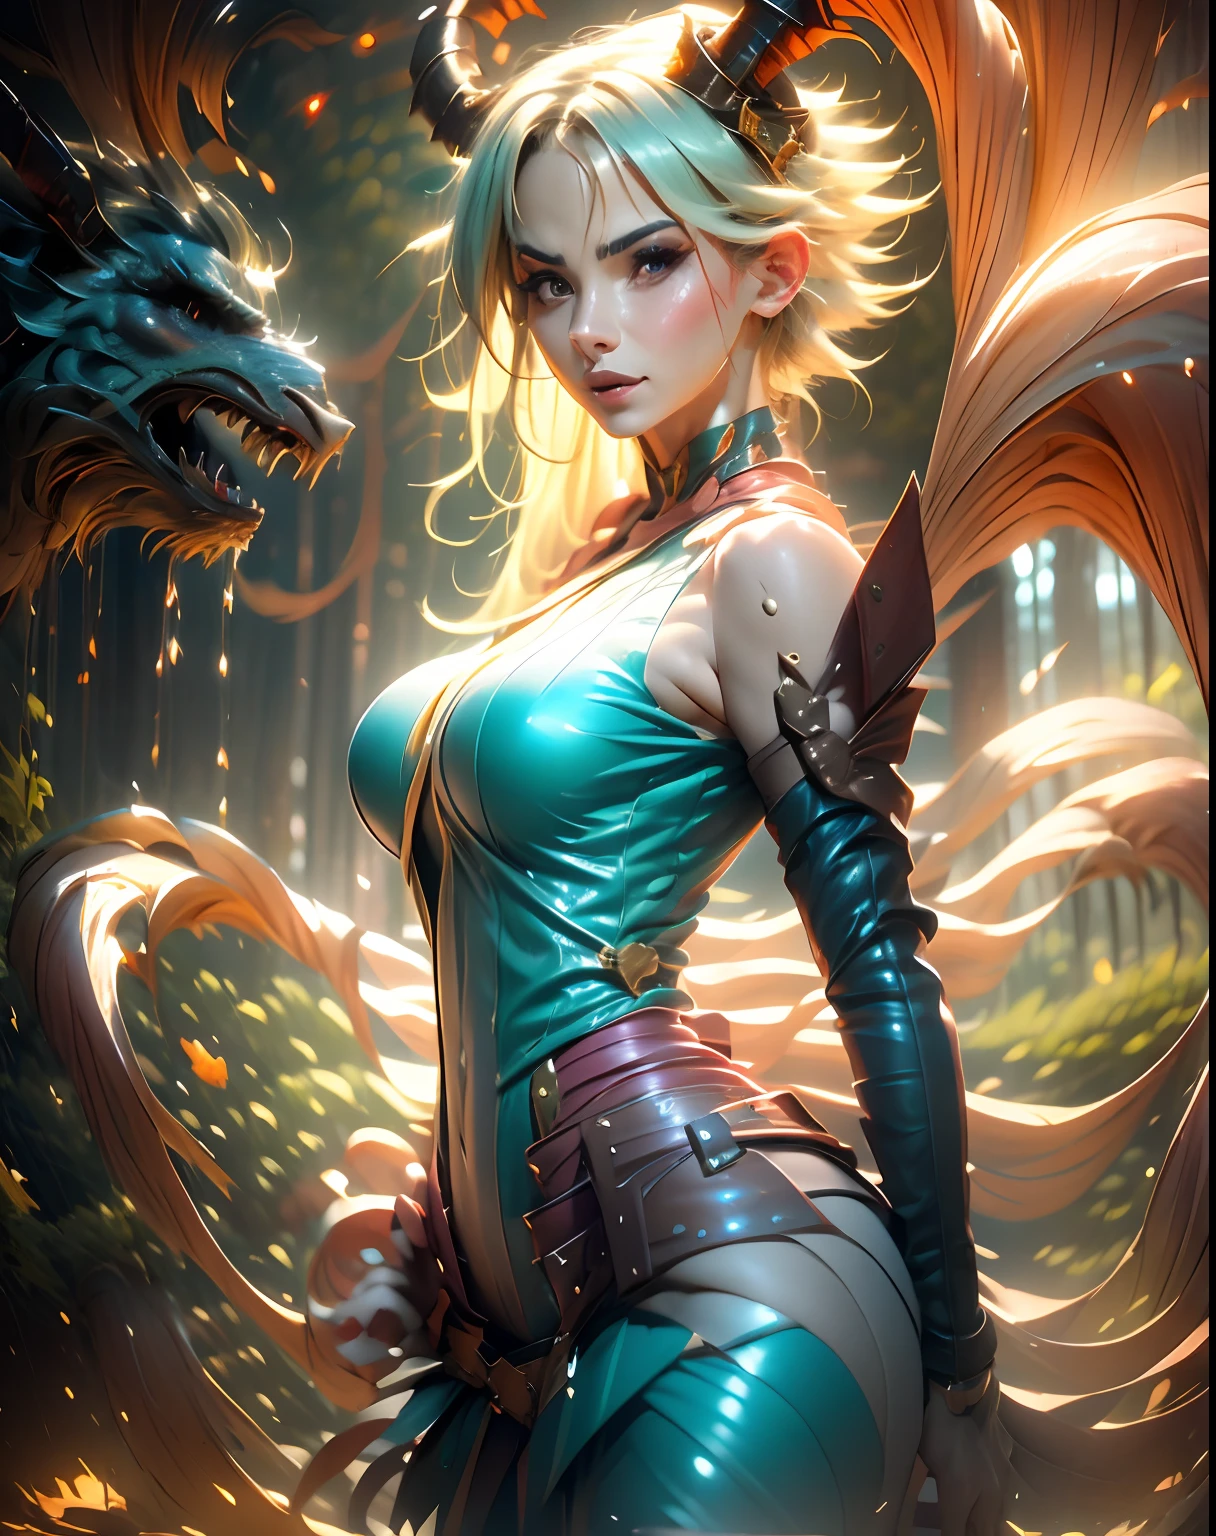 Lendária garota domadora de dragões, mago das trevas , no reino dos céus, queimando entre nuvens e raios de sol ao seu redor. Pose sedutora sexy e inocente.